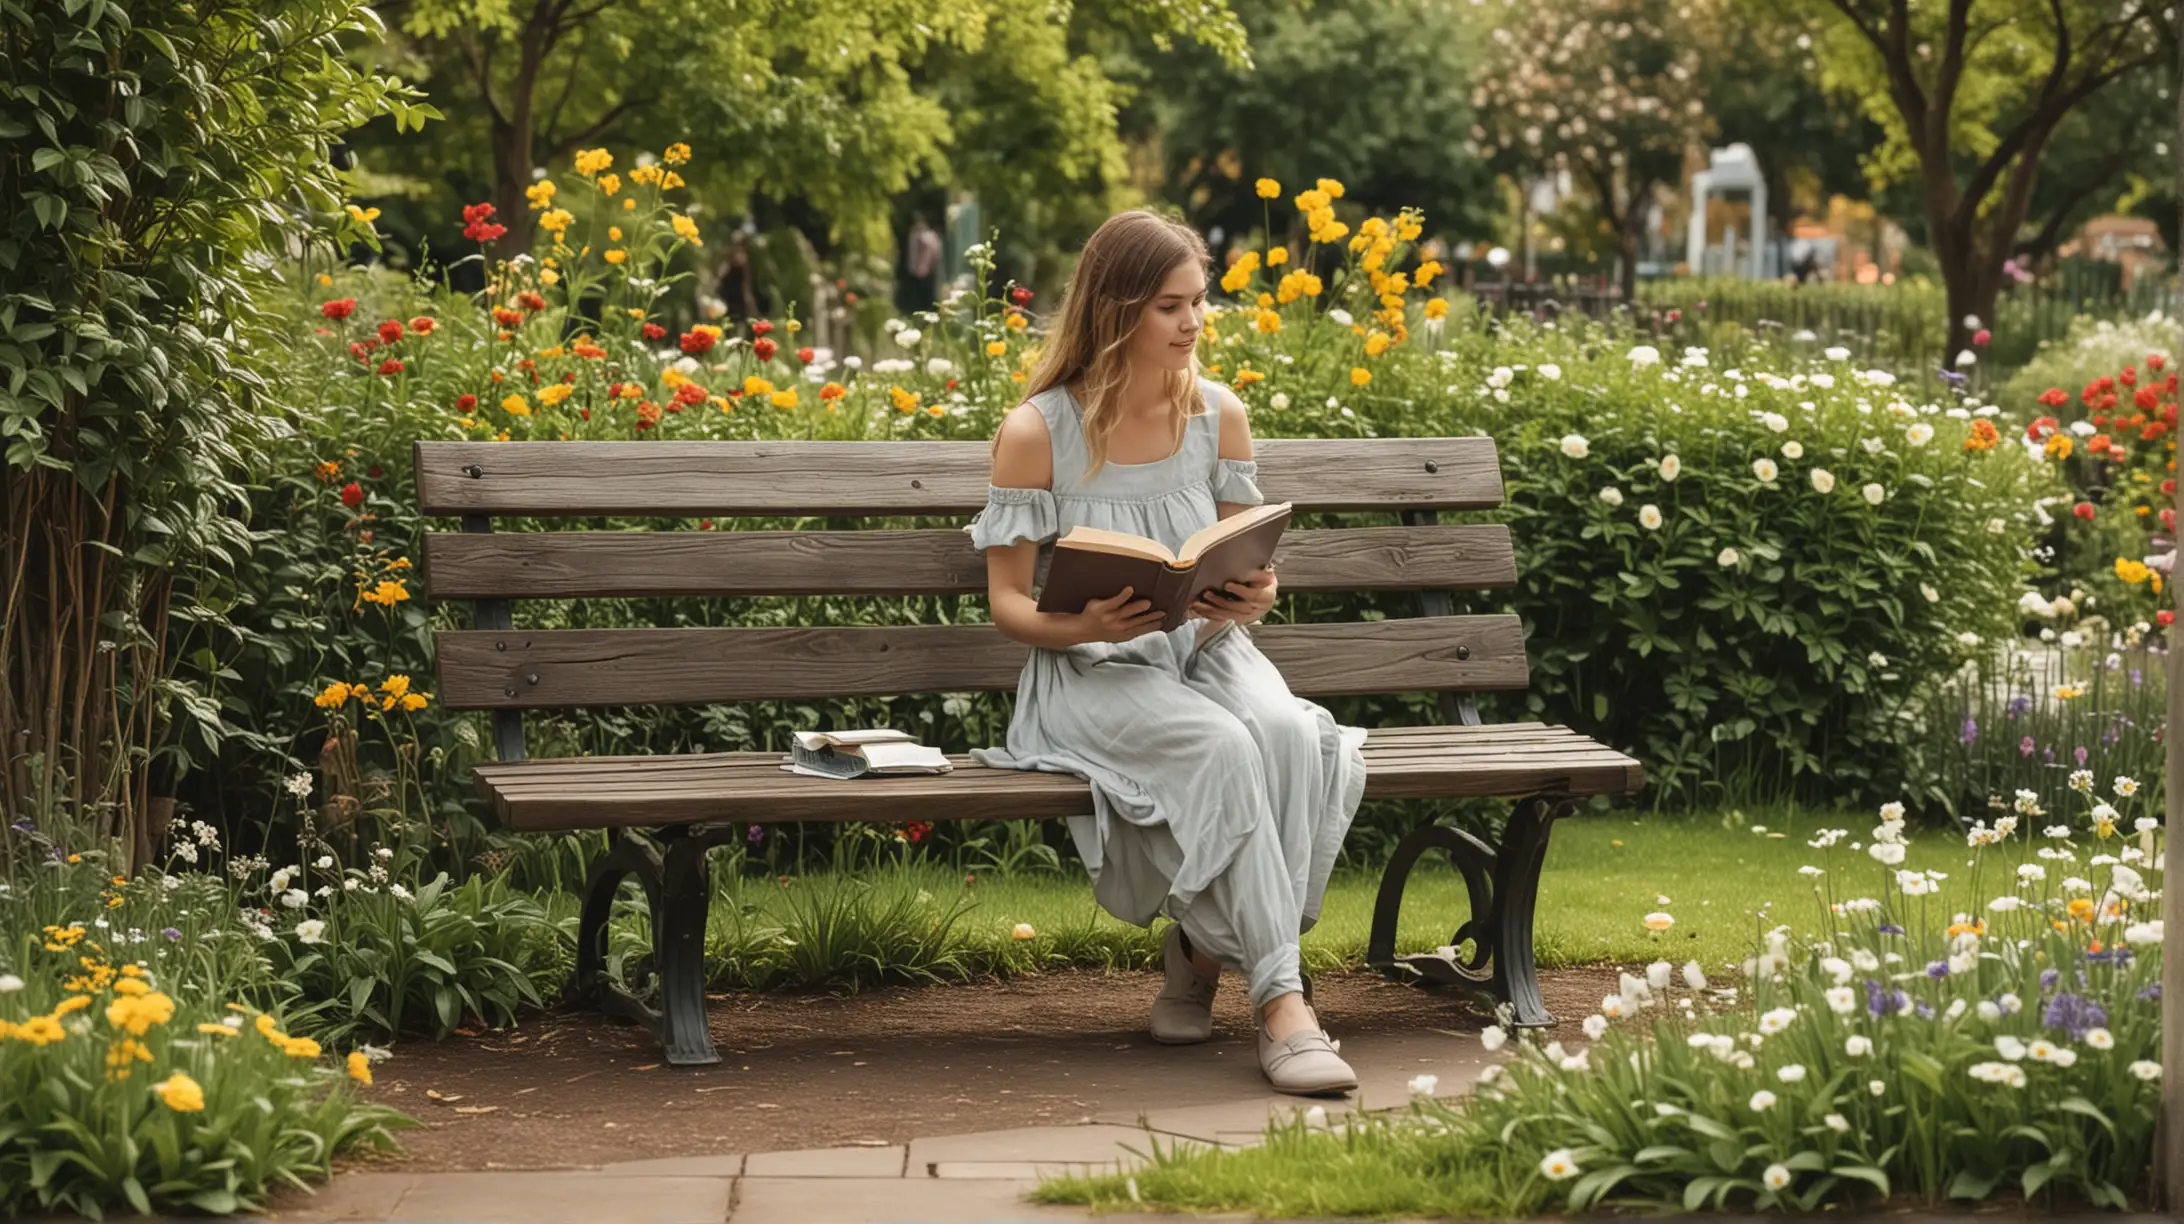 Girl Reading Book on Park Bench in Serene Garden Setting